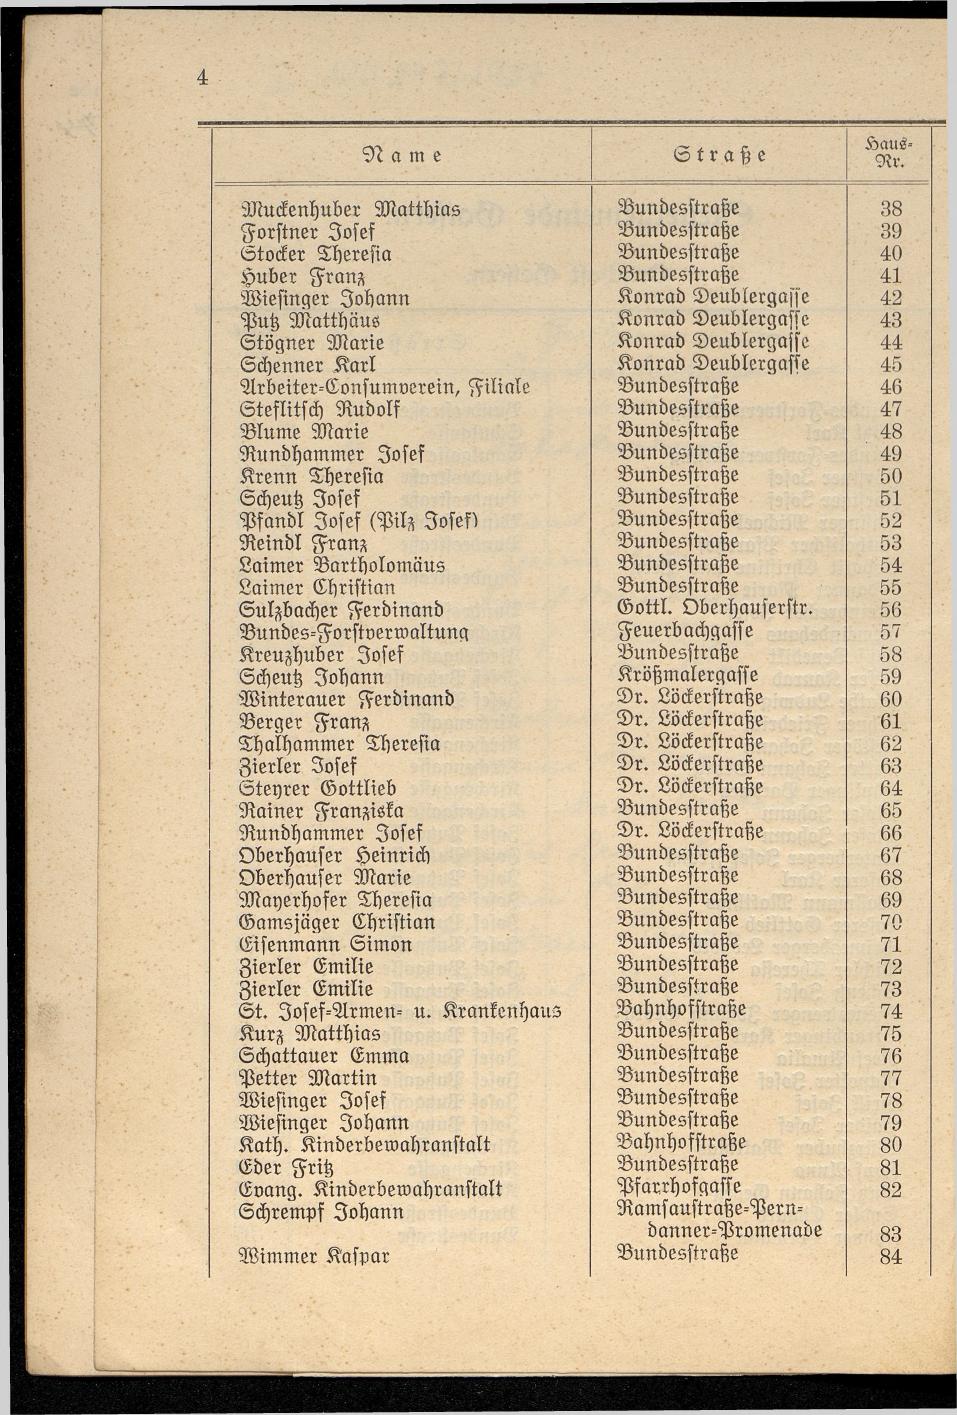 Häuser-Verzeichnis der Gemeinde Goisern nach dem Stande von Juli 1927 - Seite 6